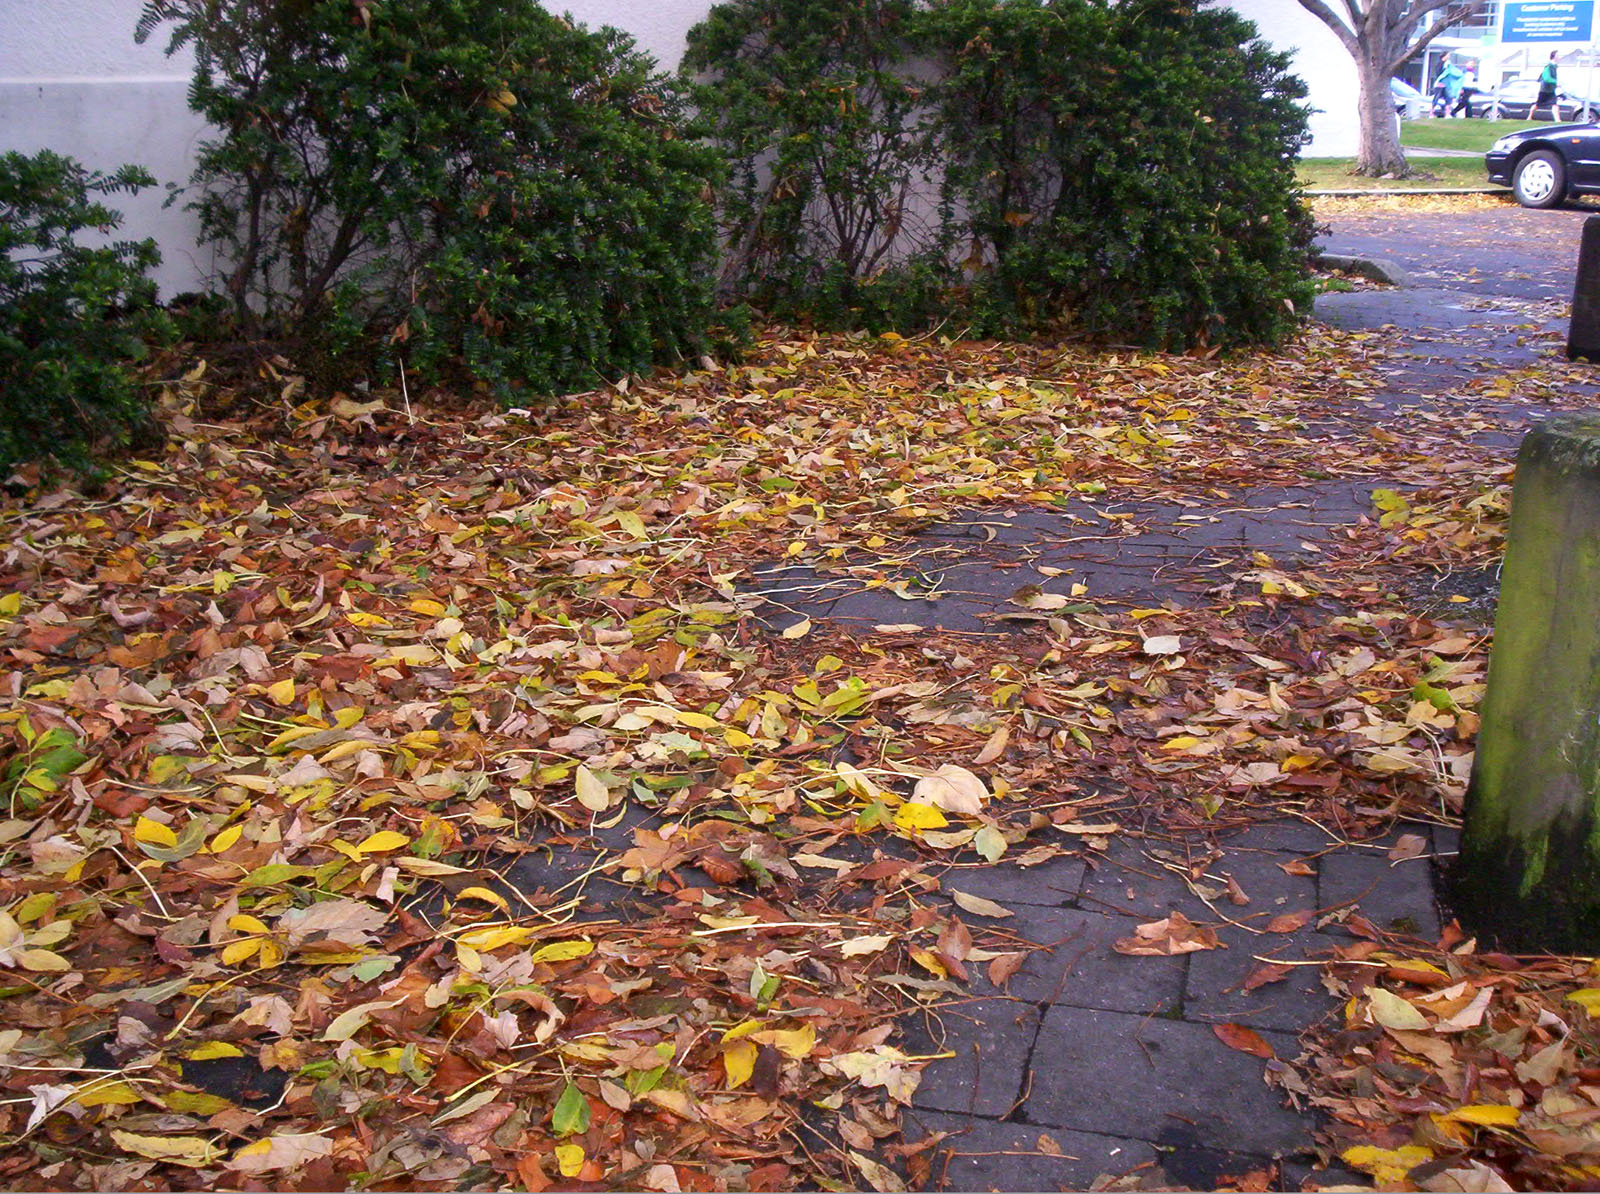 Leaves, Autumn, Bspo06, Carpark, Hues, HQ Photo